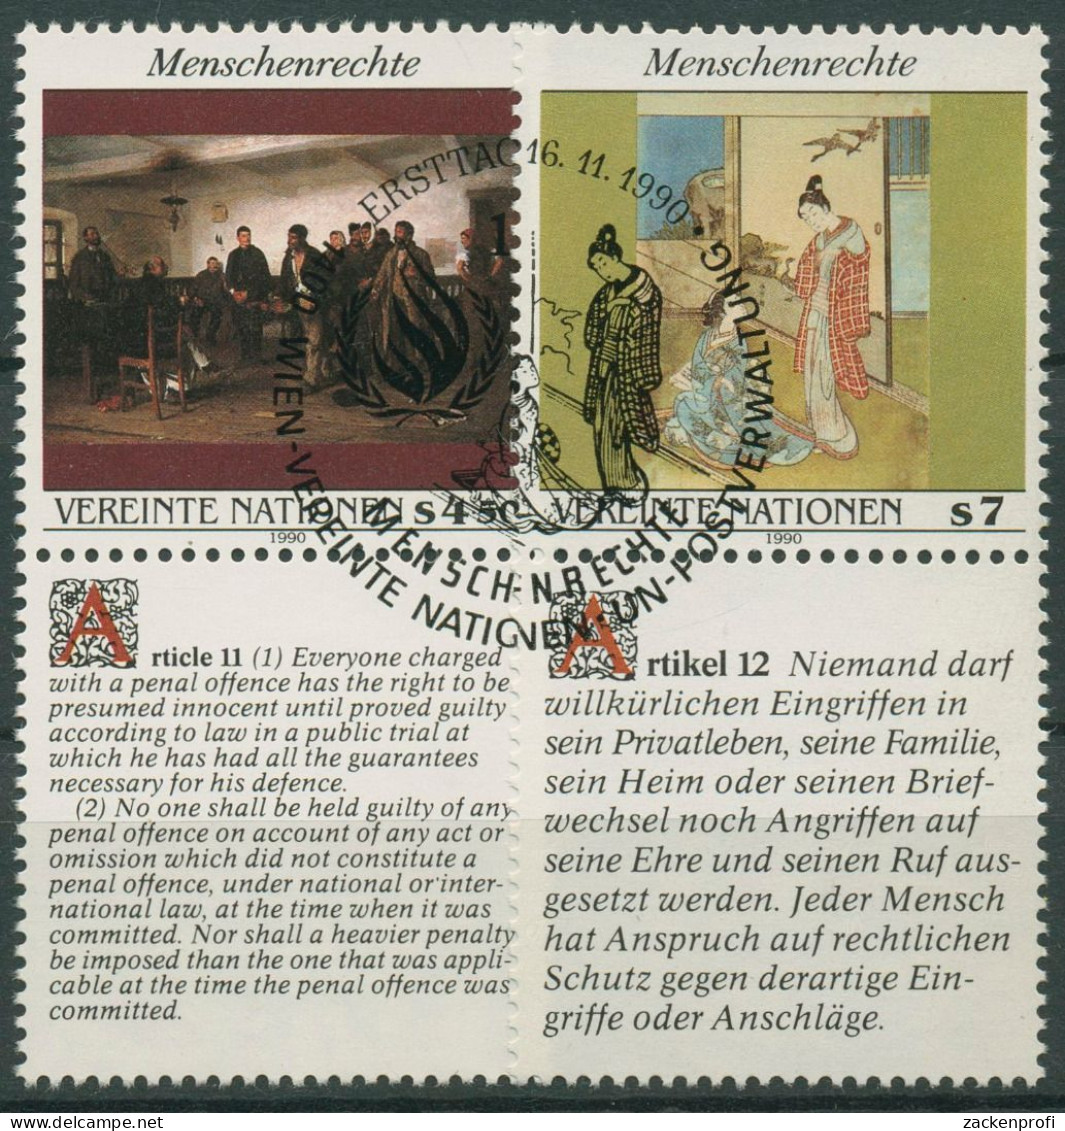 UNO Wien 1990 Erklärung Der Menschenrechte Gemälde 108/09 Zf Gestempelt - Used Stamps